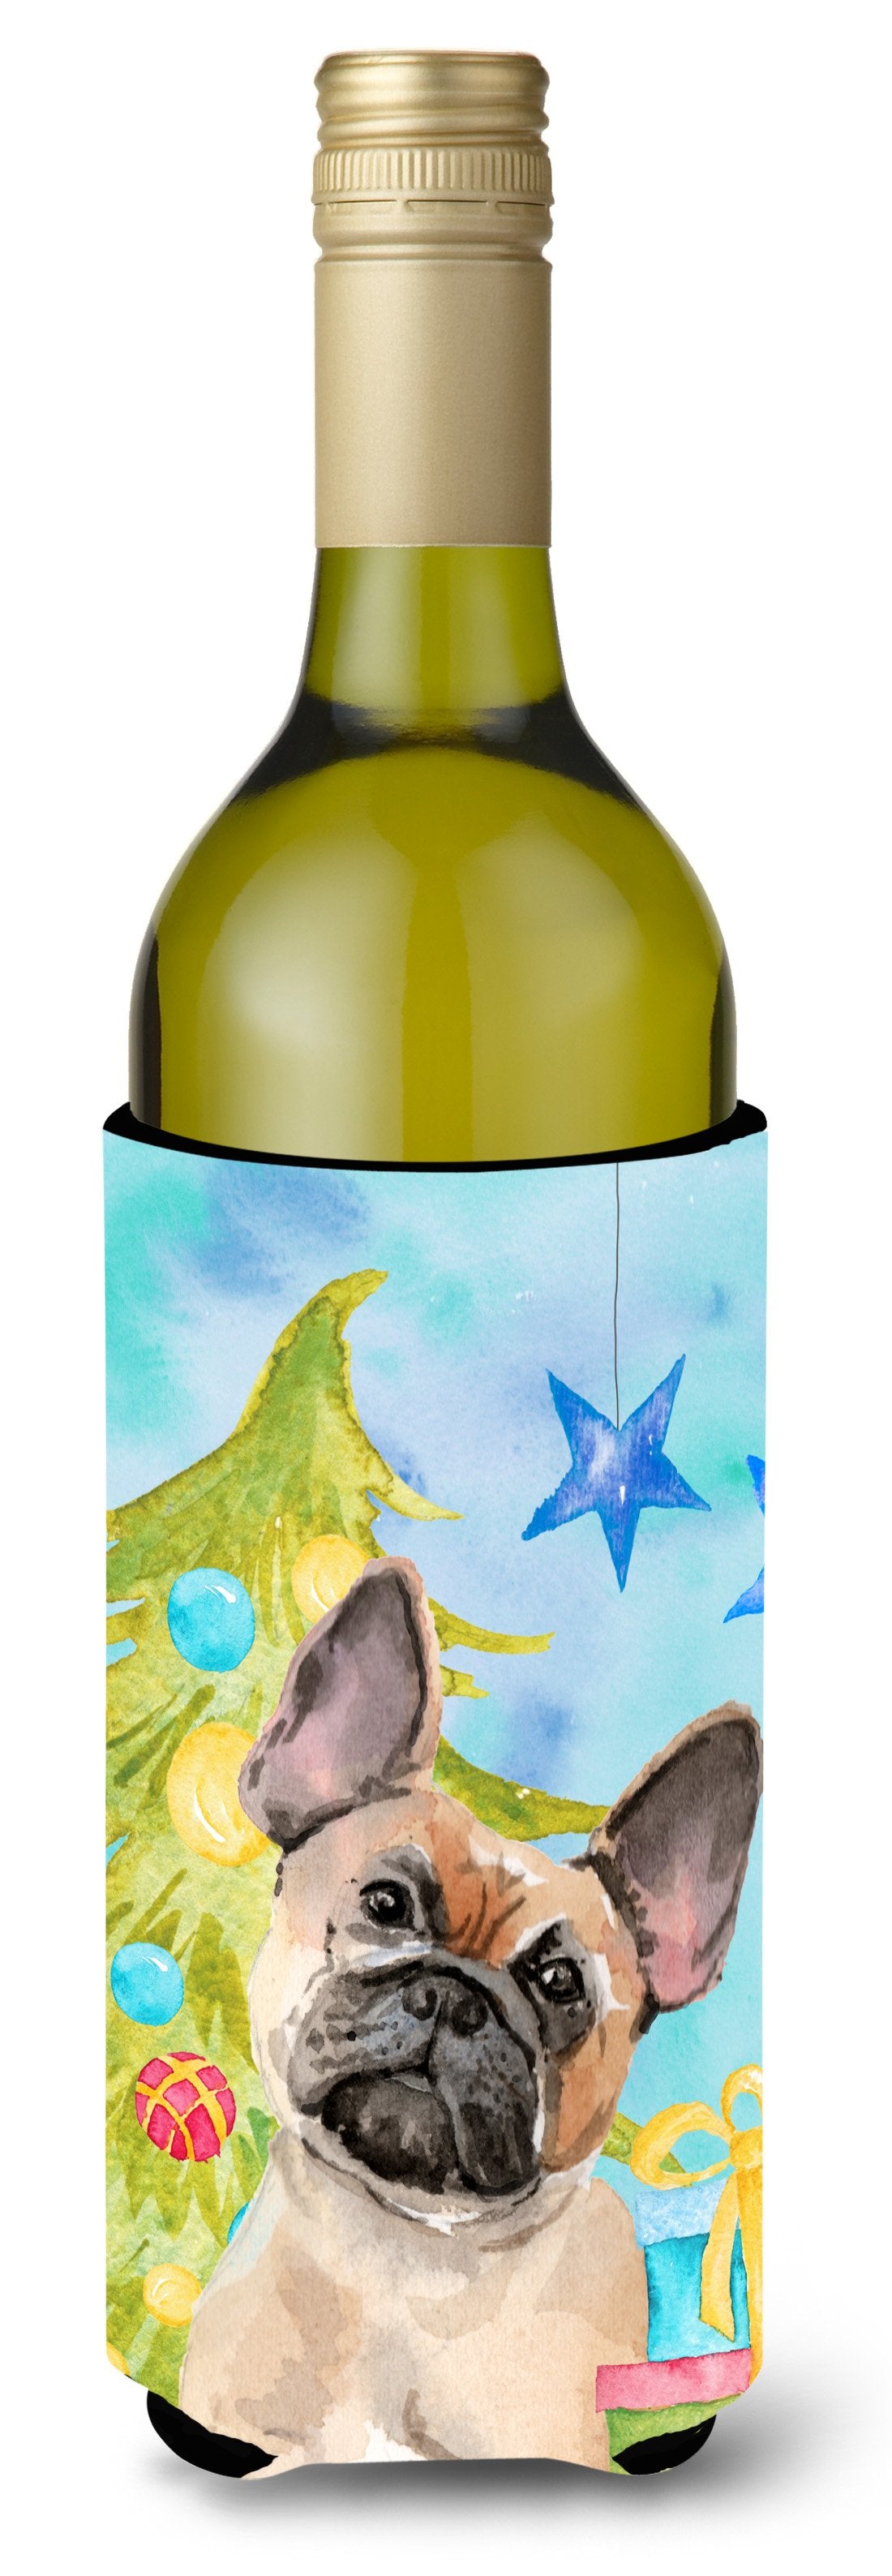 Fawn French Bulldog Christmas Wine Bottle Beverge Insulator Hugger BB9417LITERK by Caroline's Treasures